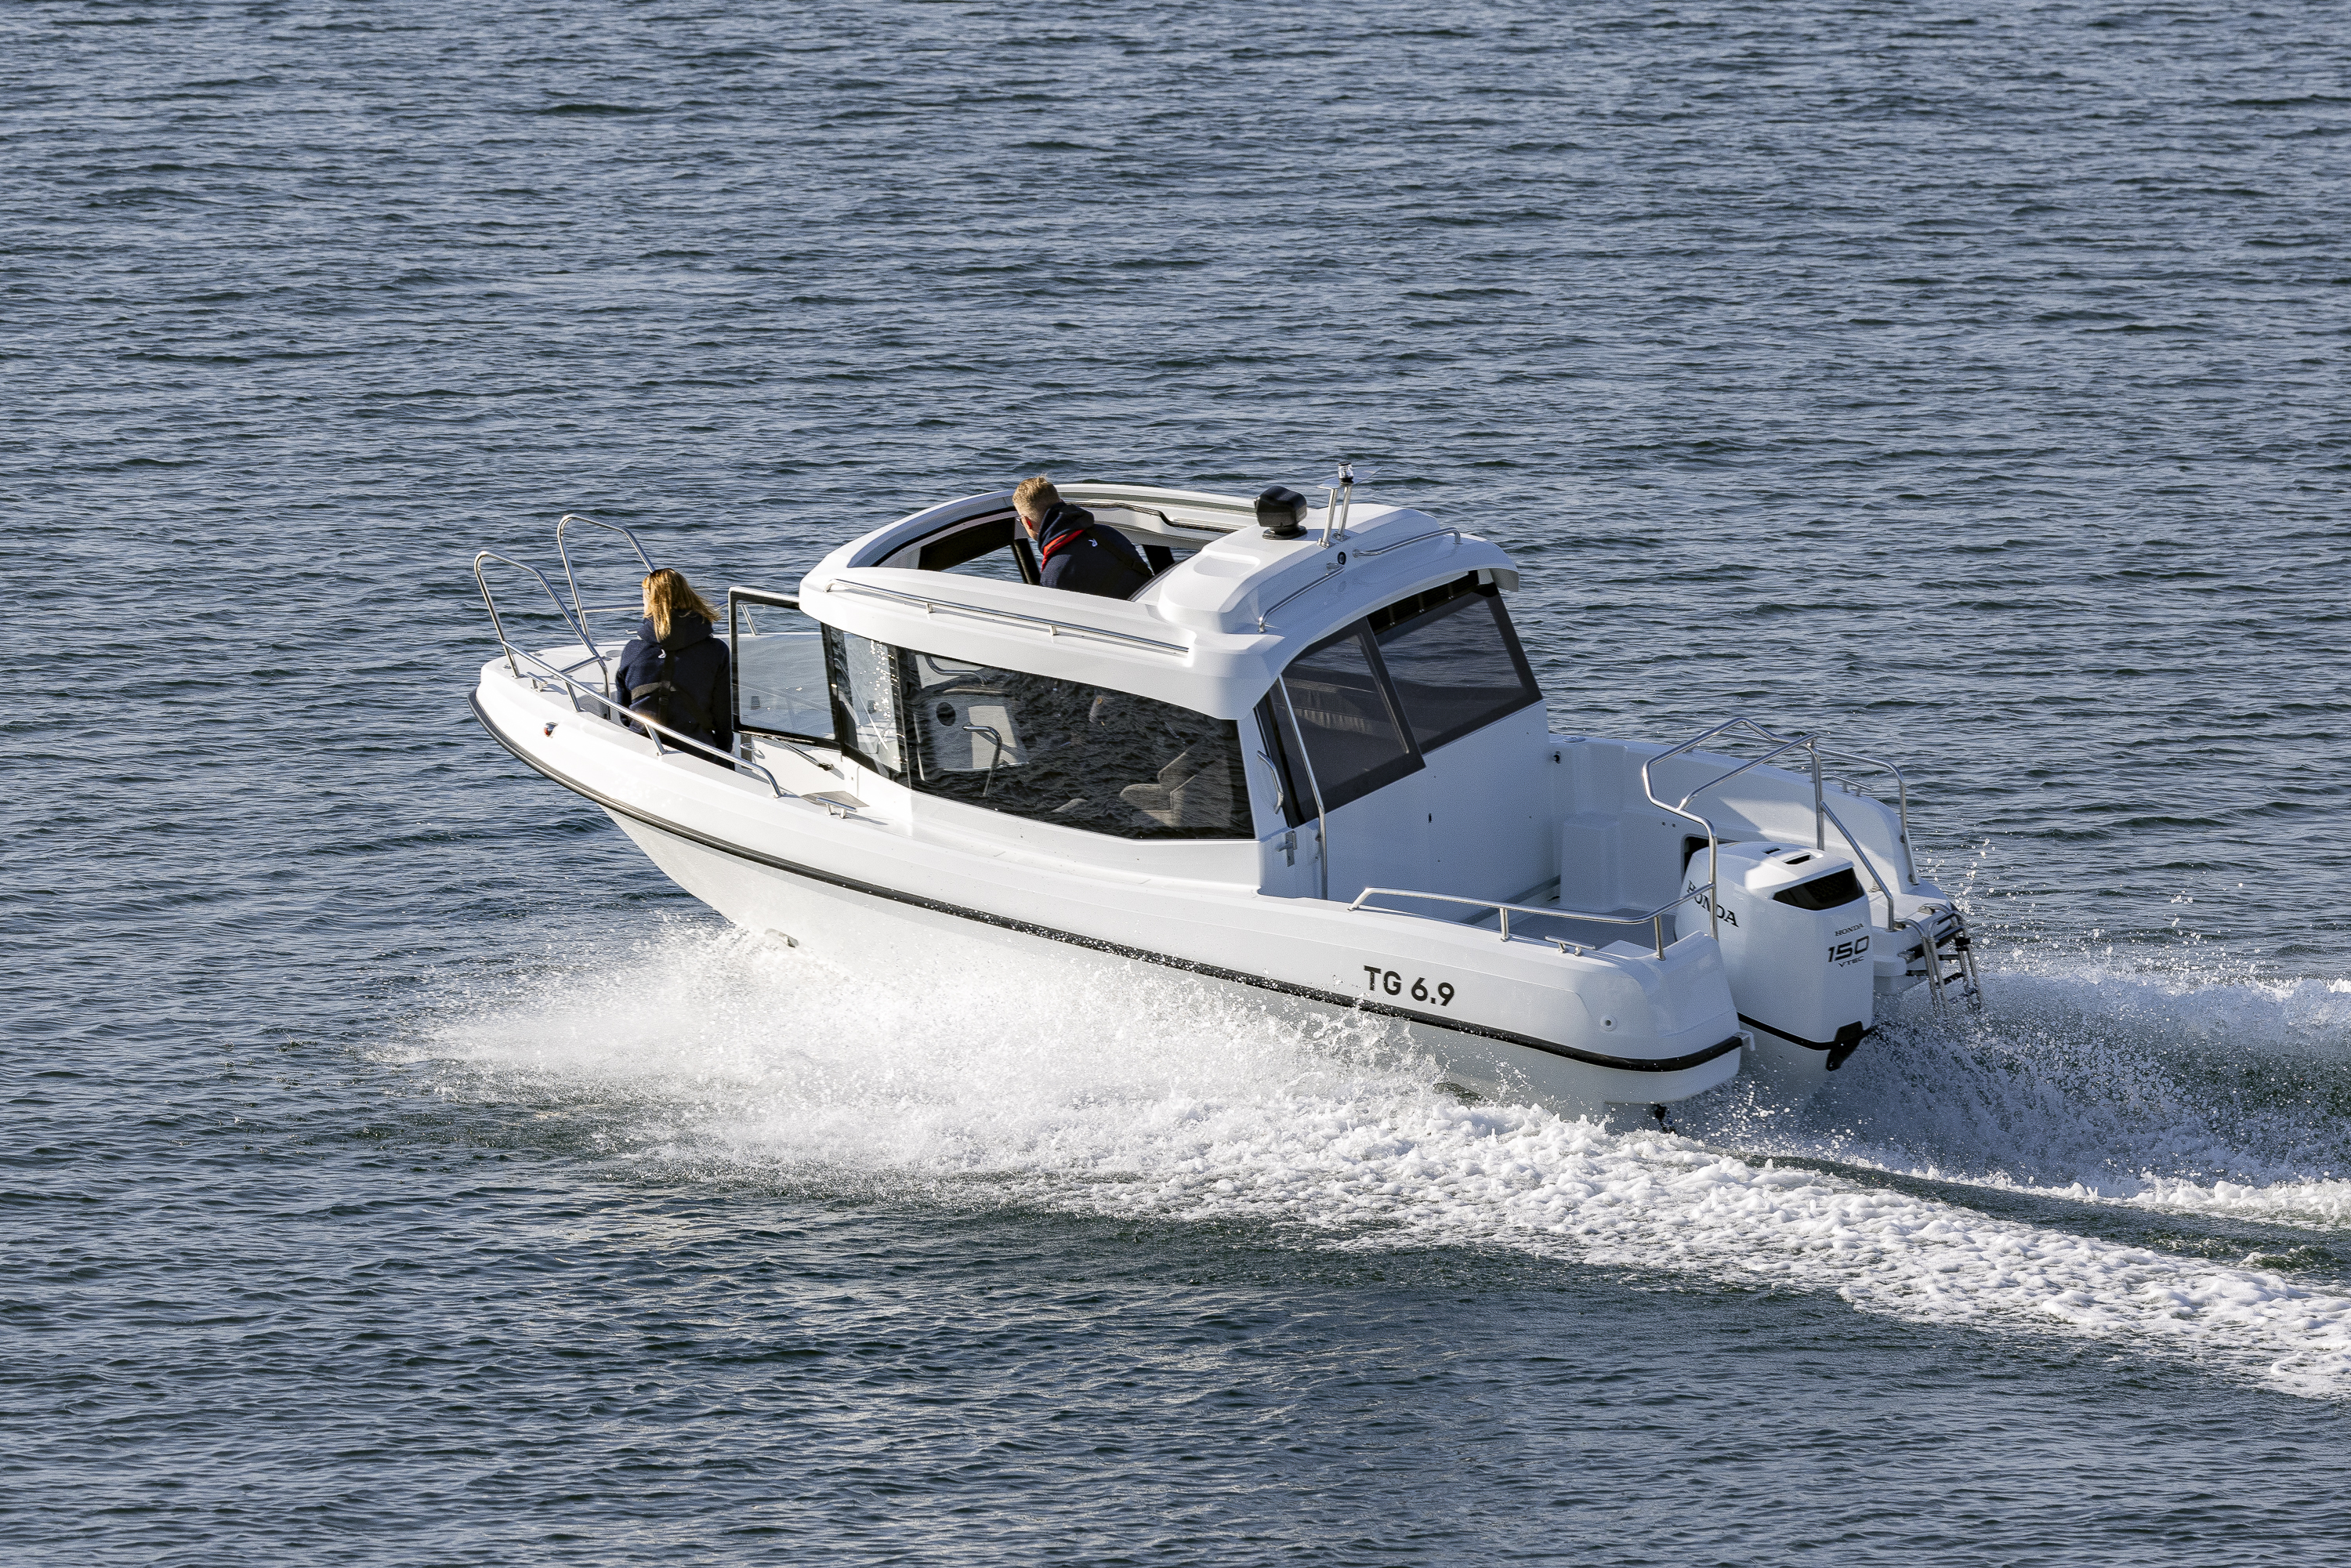 TG 6.9 -kabinbåt kör i hög hastighet genom öppet hav med takluckan öppen.